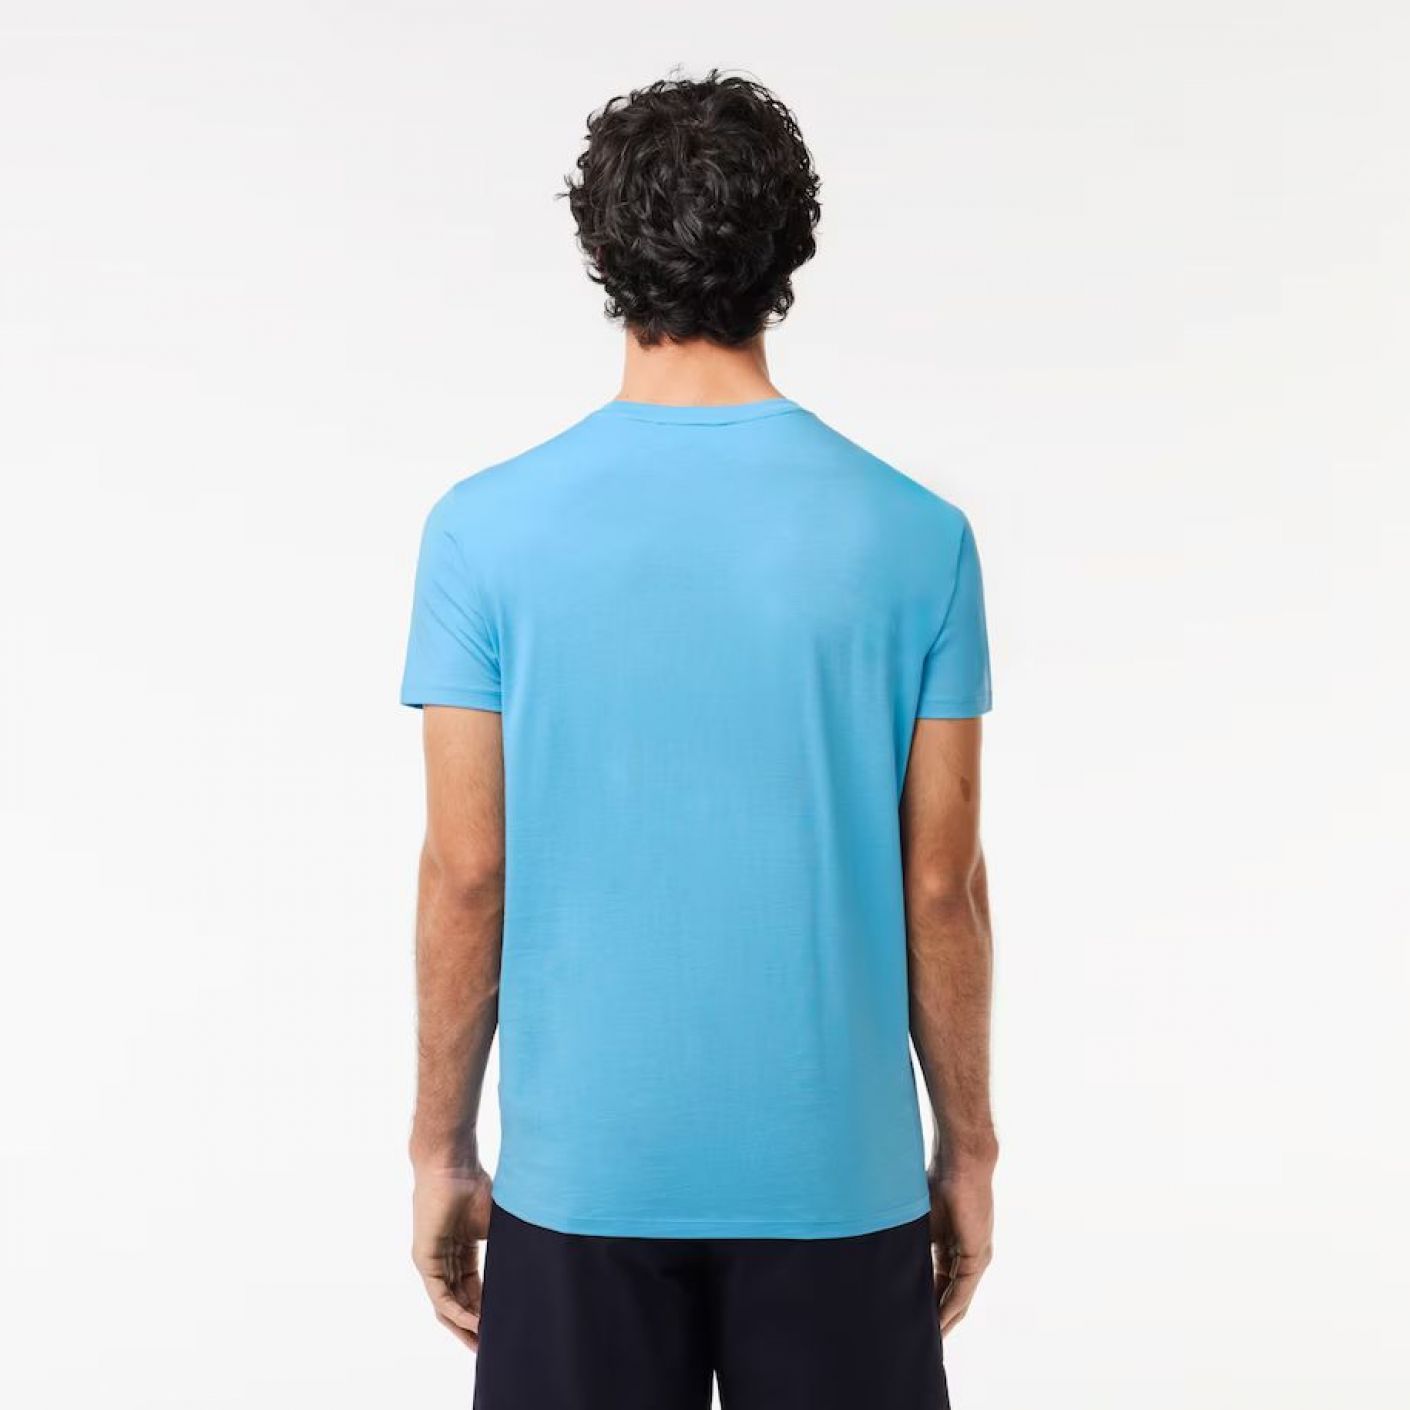 Lacoste T-shirt a Girocollo in Cotone Pima Azzurro